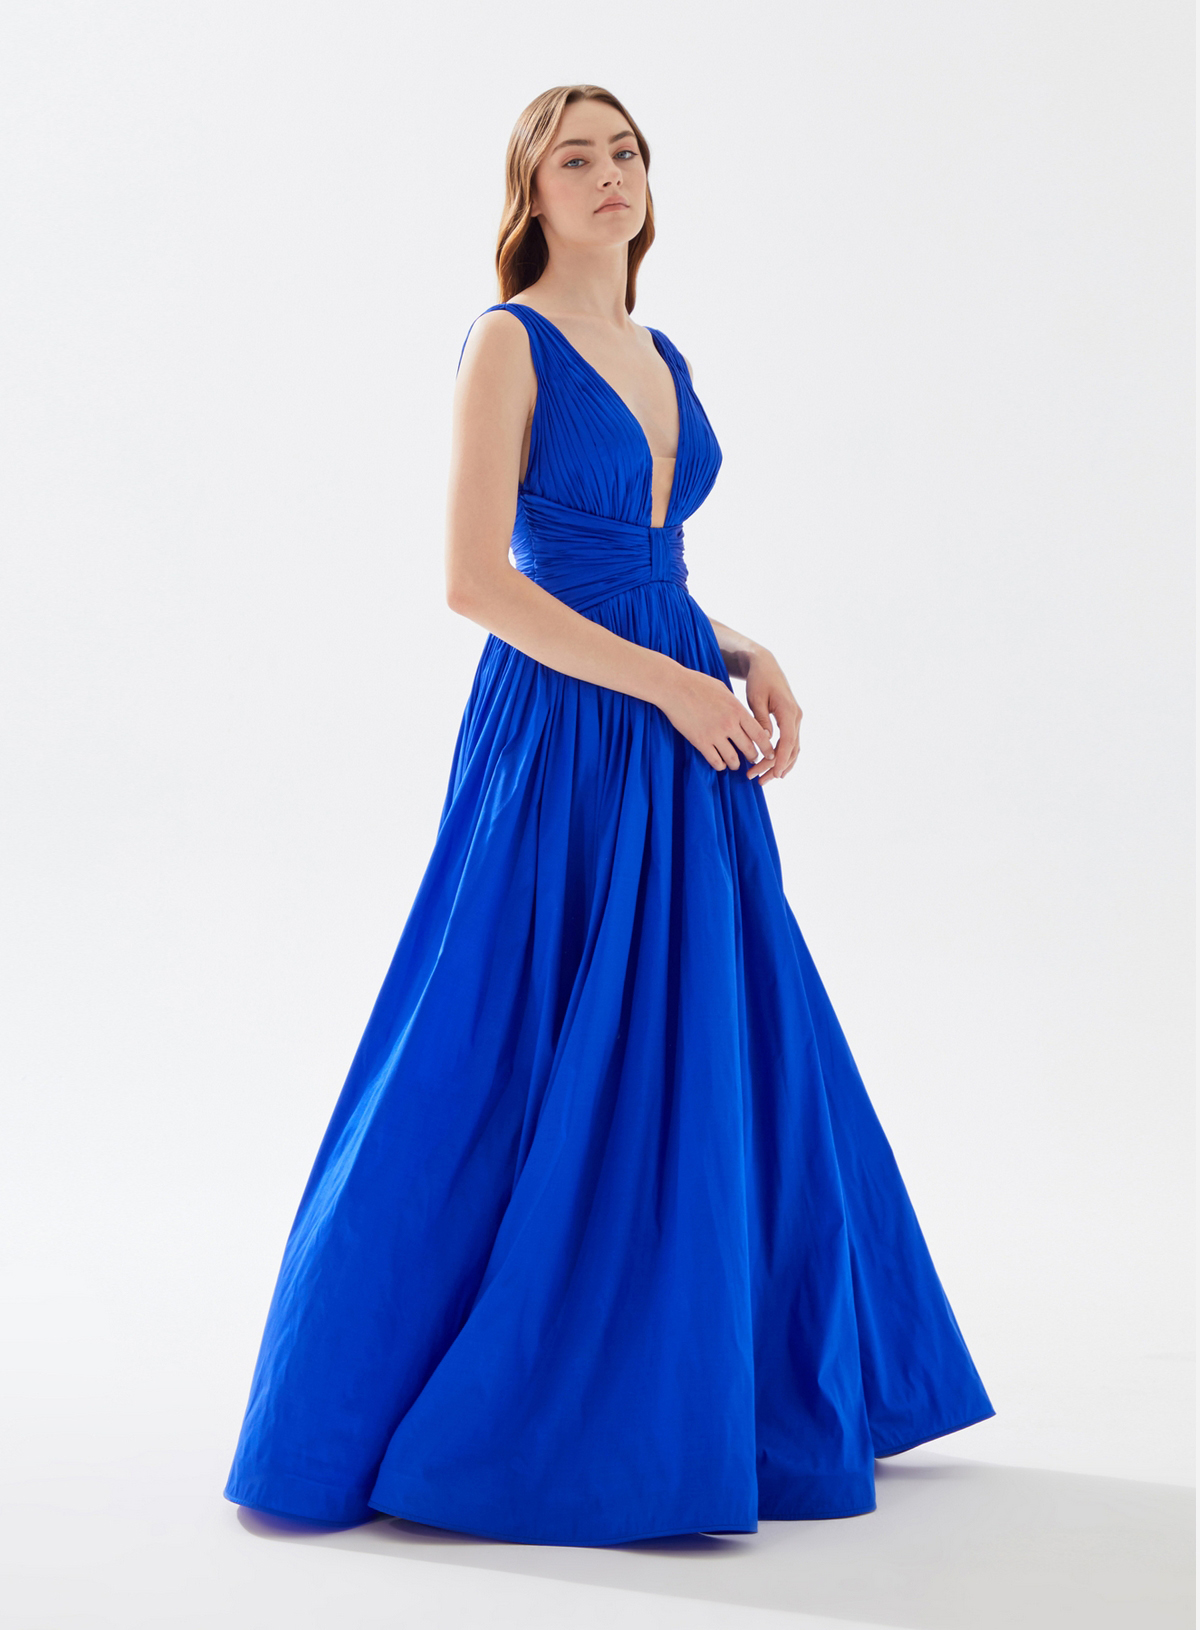 Picture of Odette Royal Blue Dress